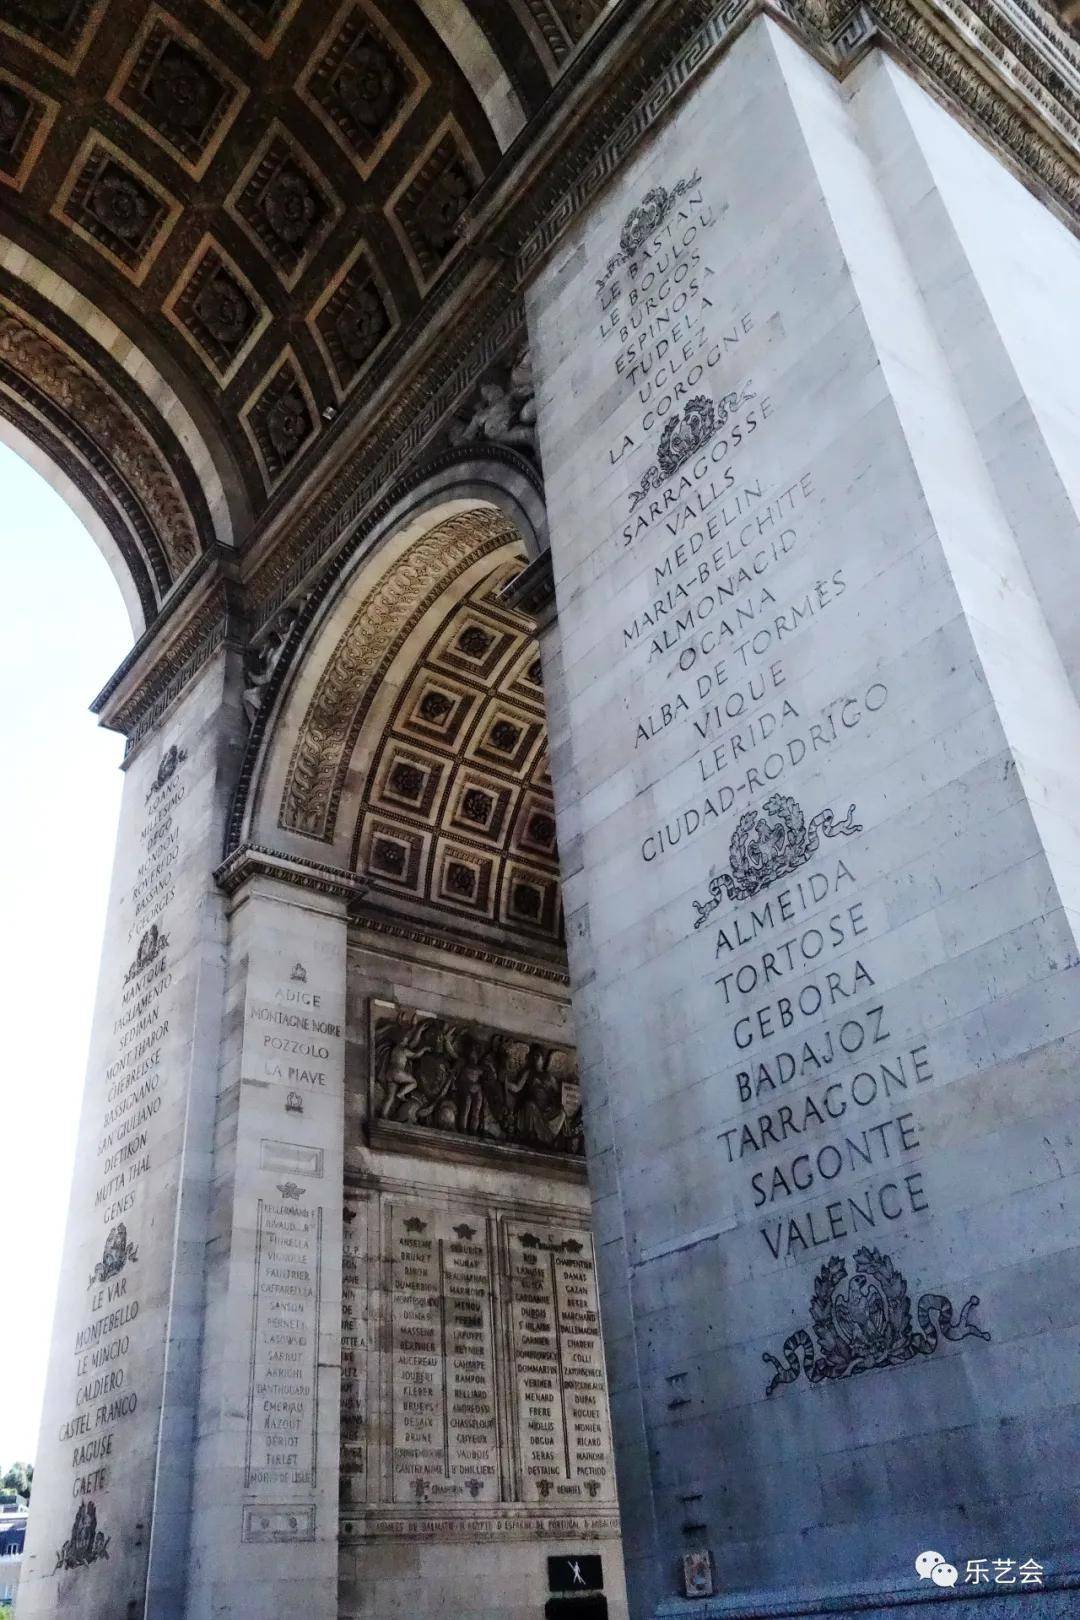  巴黎凯旋门雕塑艺术巡礼上篇